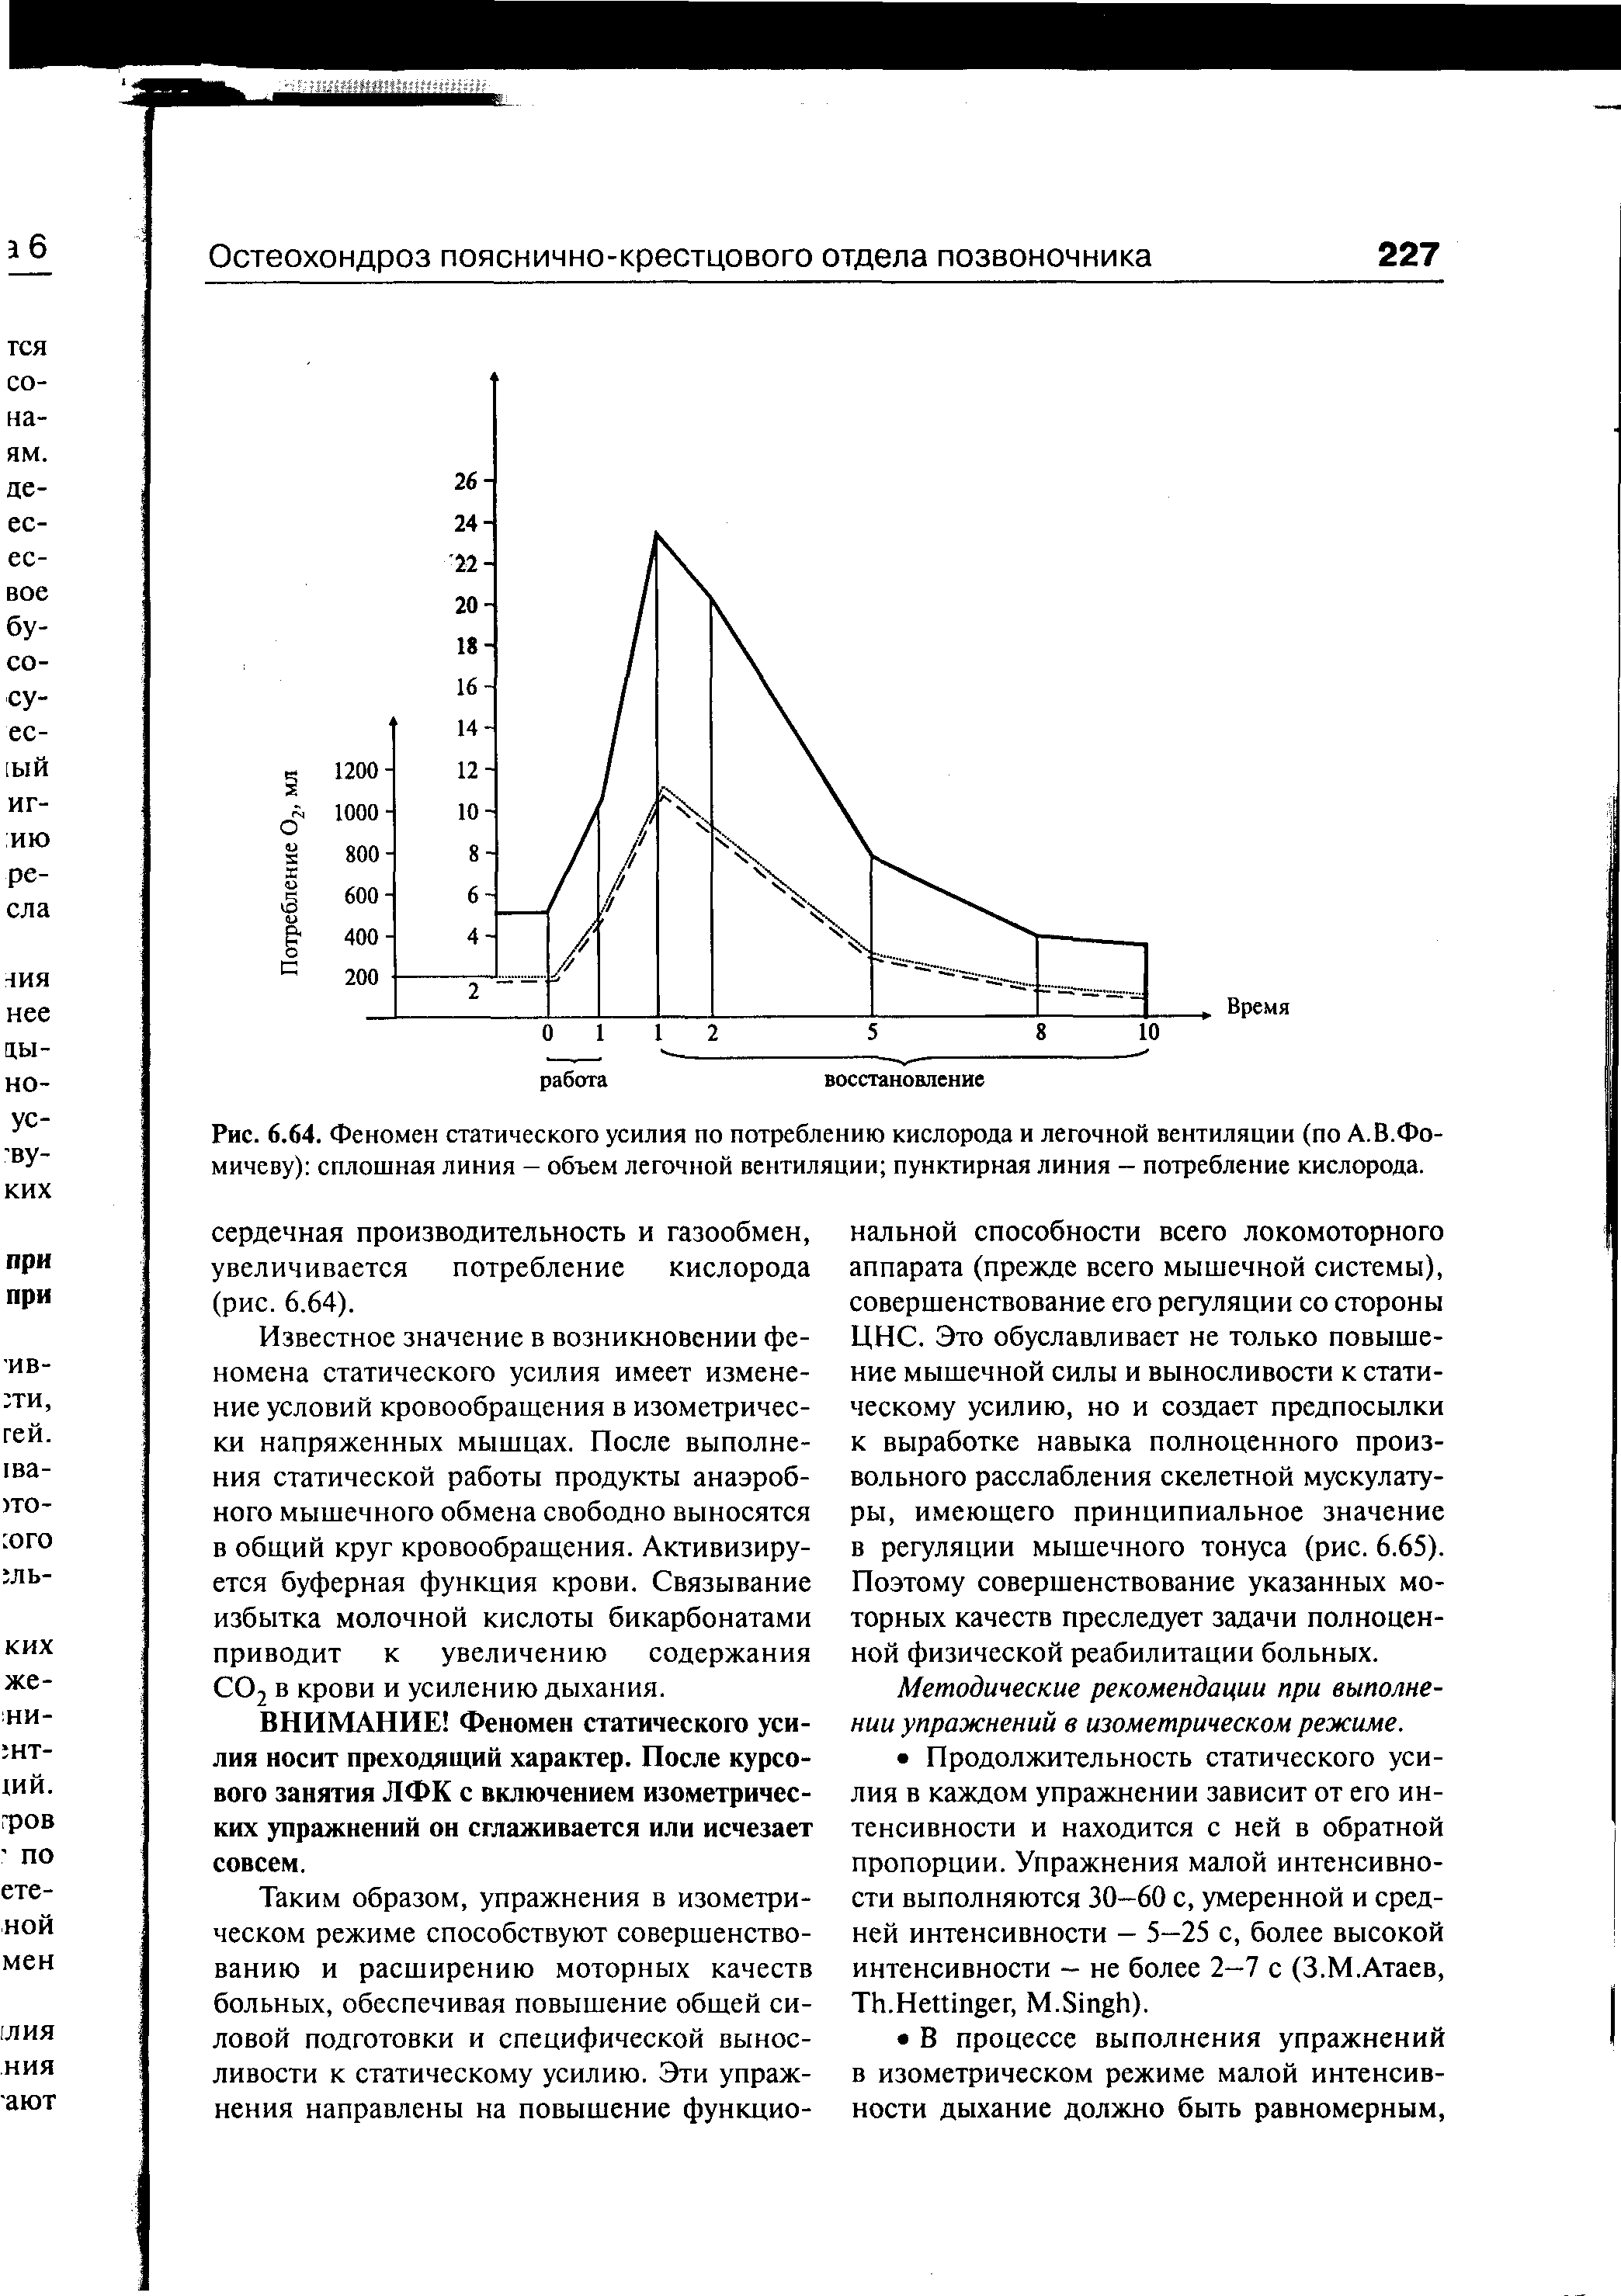 Рис. 6.64. Феномен статического усилия по потреблению кислорода и легочной вентиляции (по А. В.Фомичеву) сплошная линия - объем легочной вентиляции пунктирная линия - потребление кислорода.